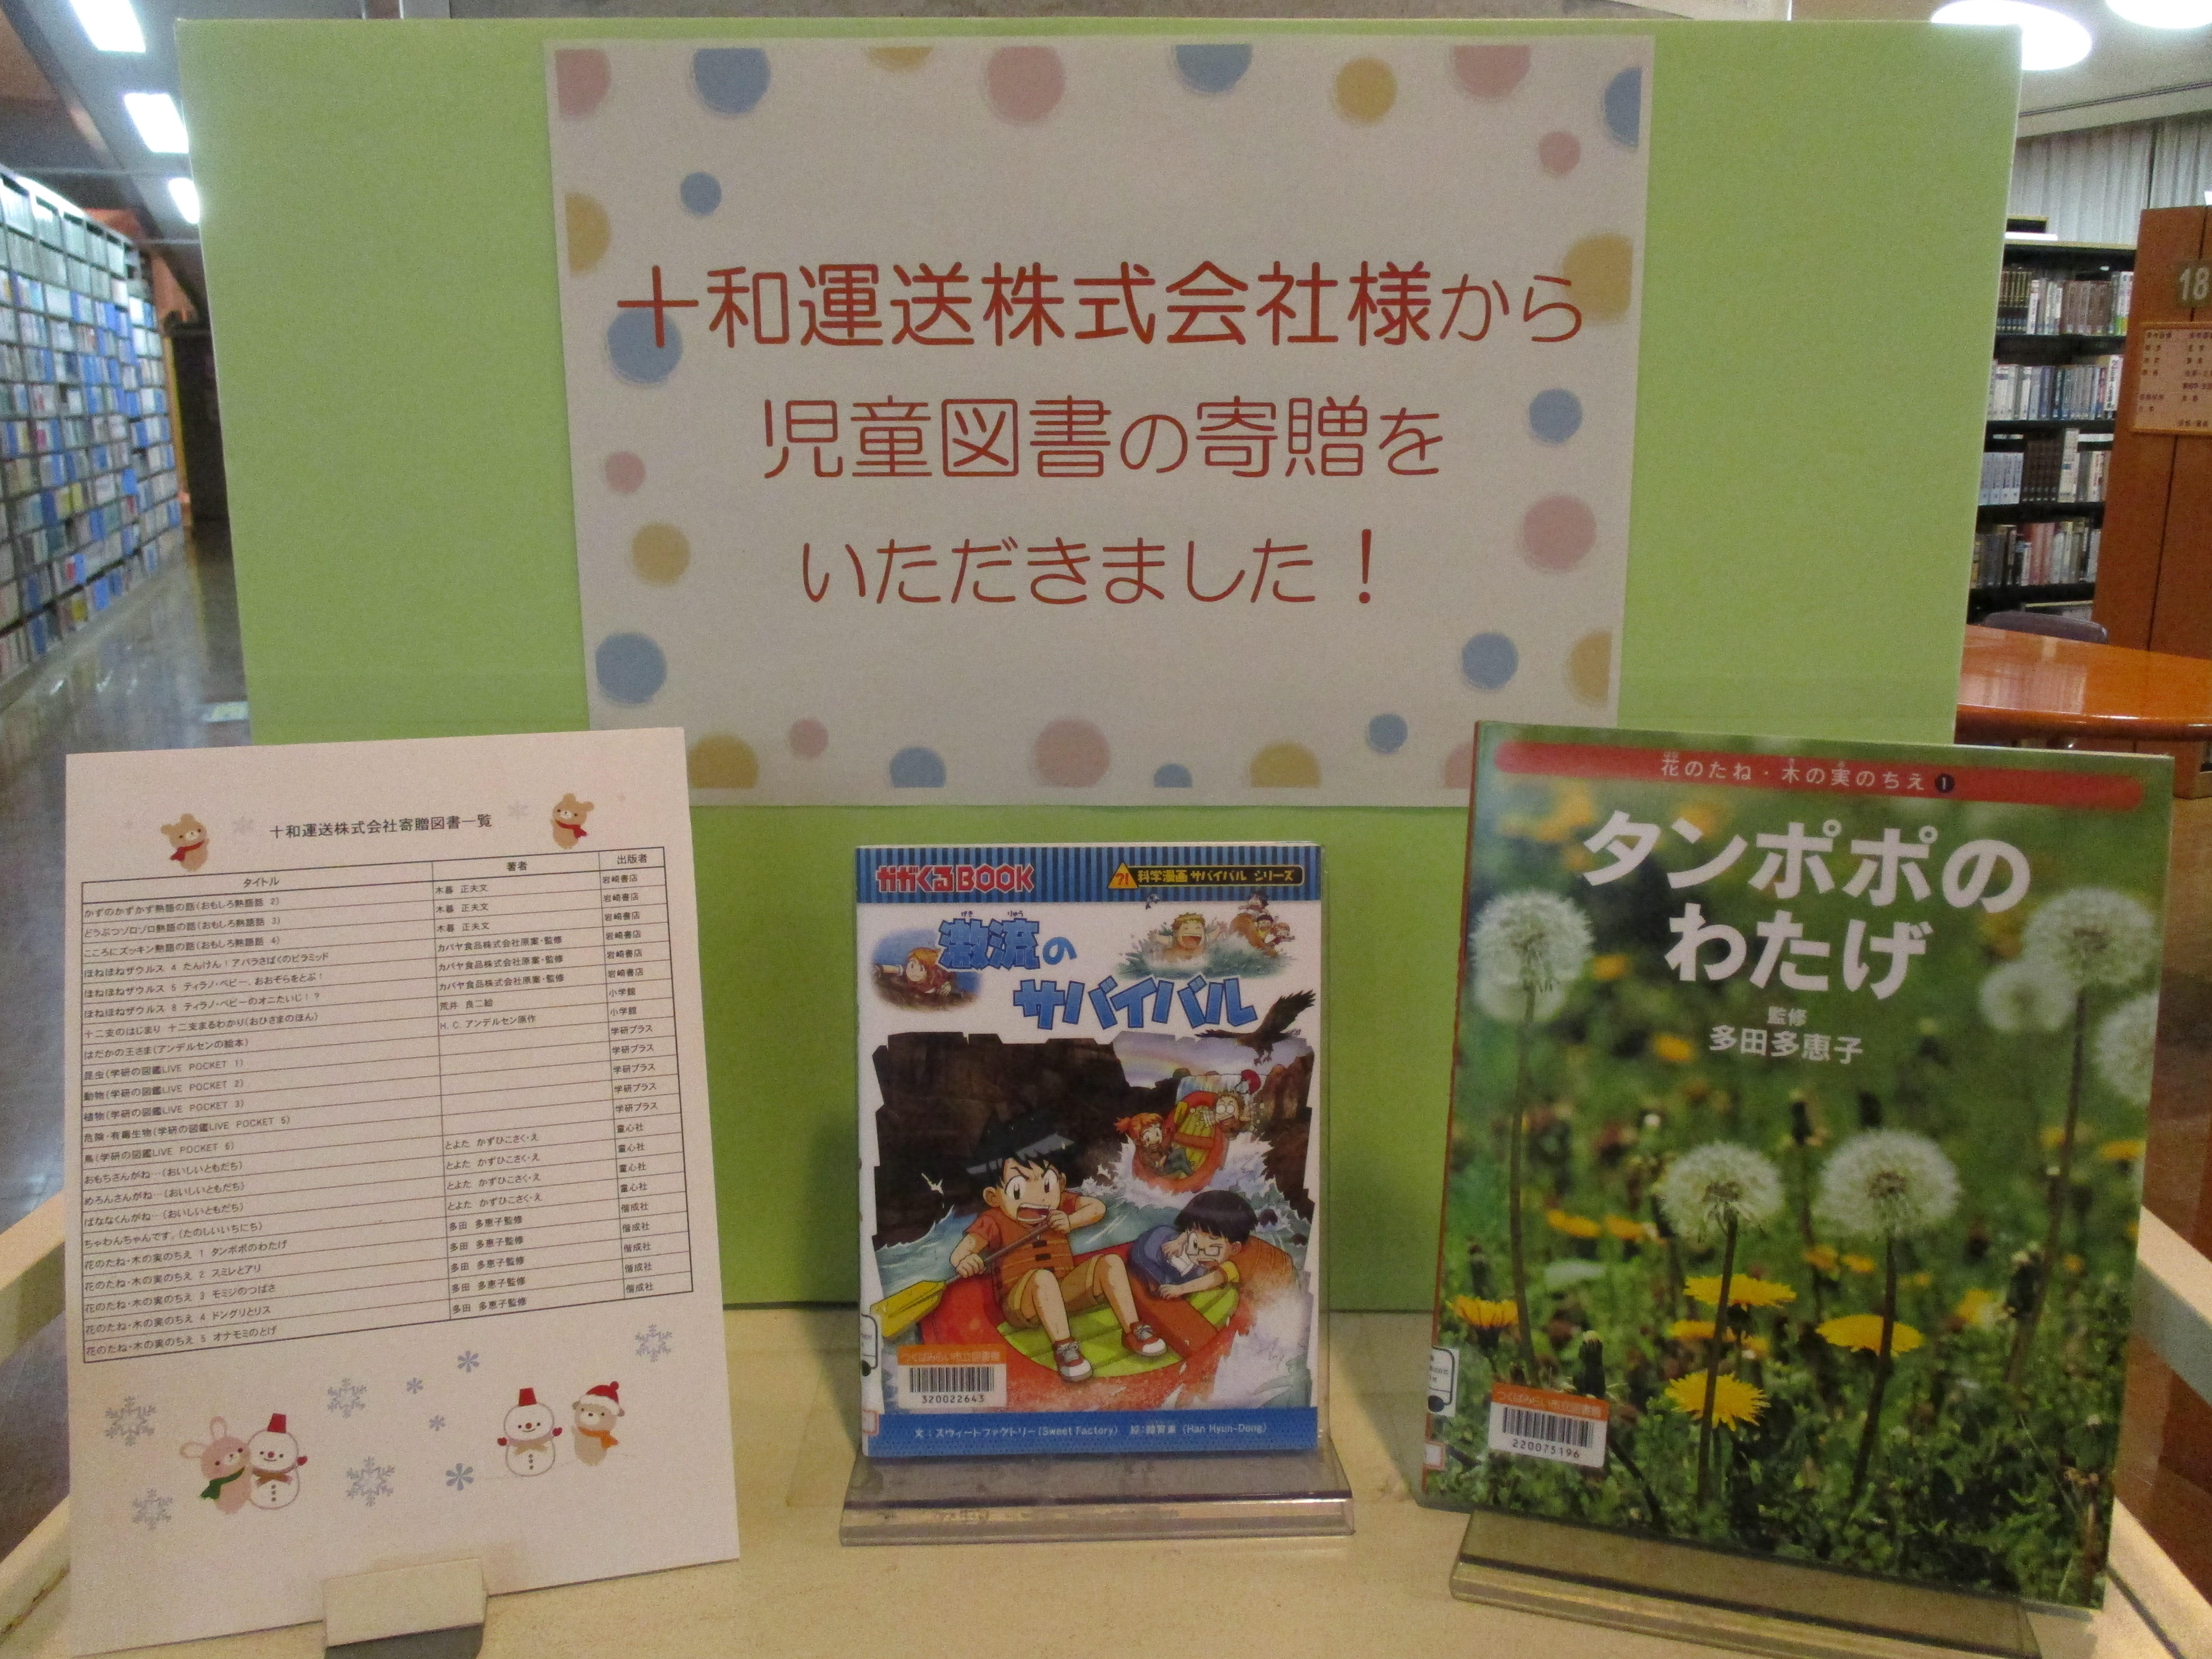 十和運送株式会社様から児童図書の寄贈をいただきました